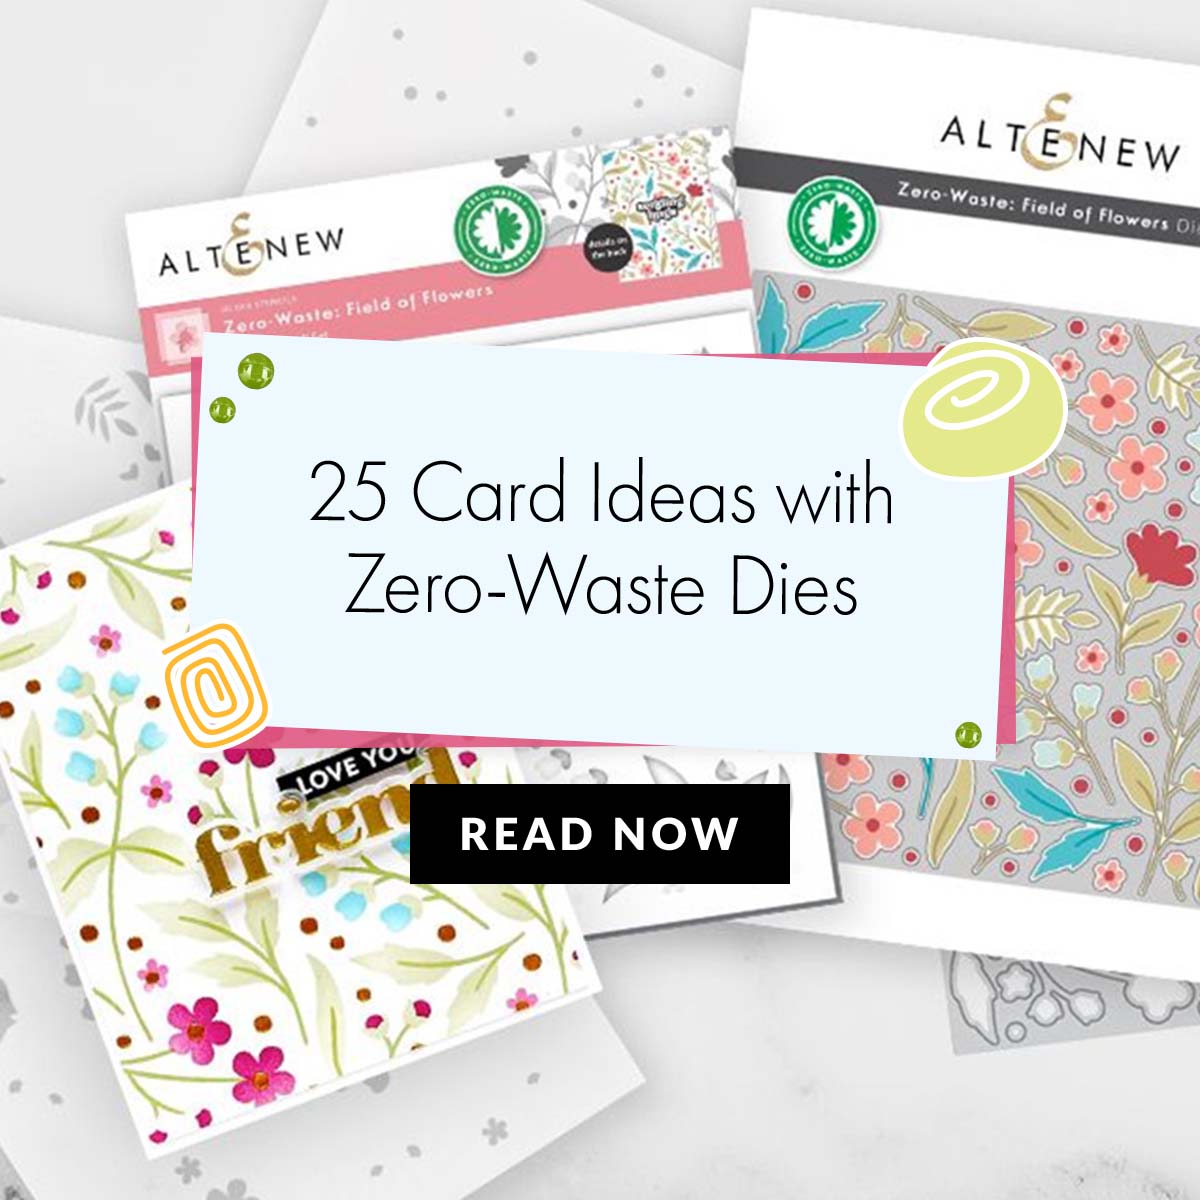 Go Zero-Waste with Altenew!